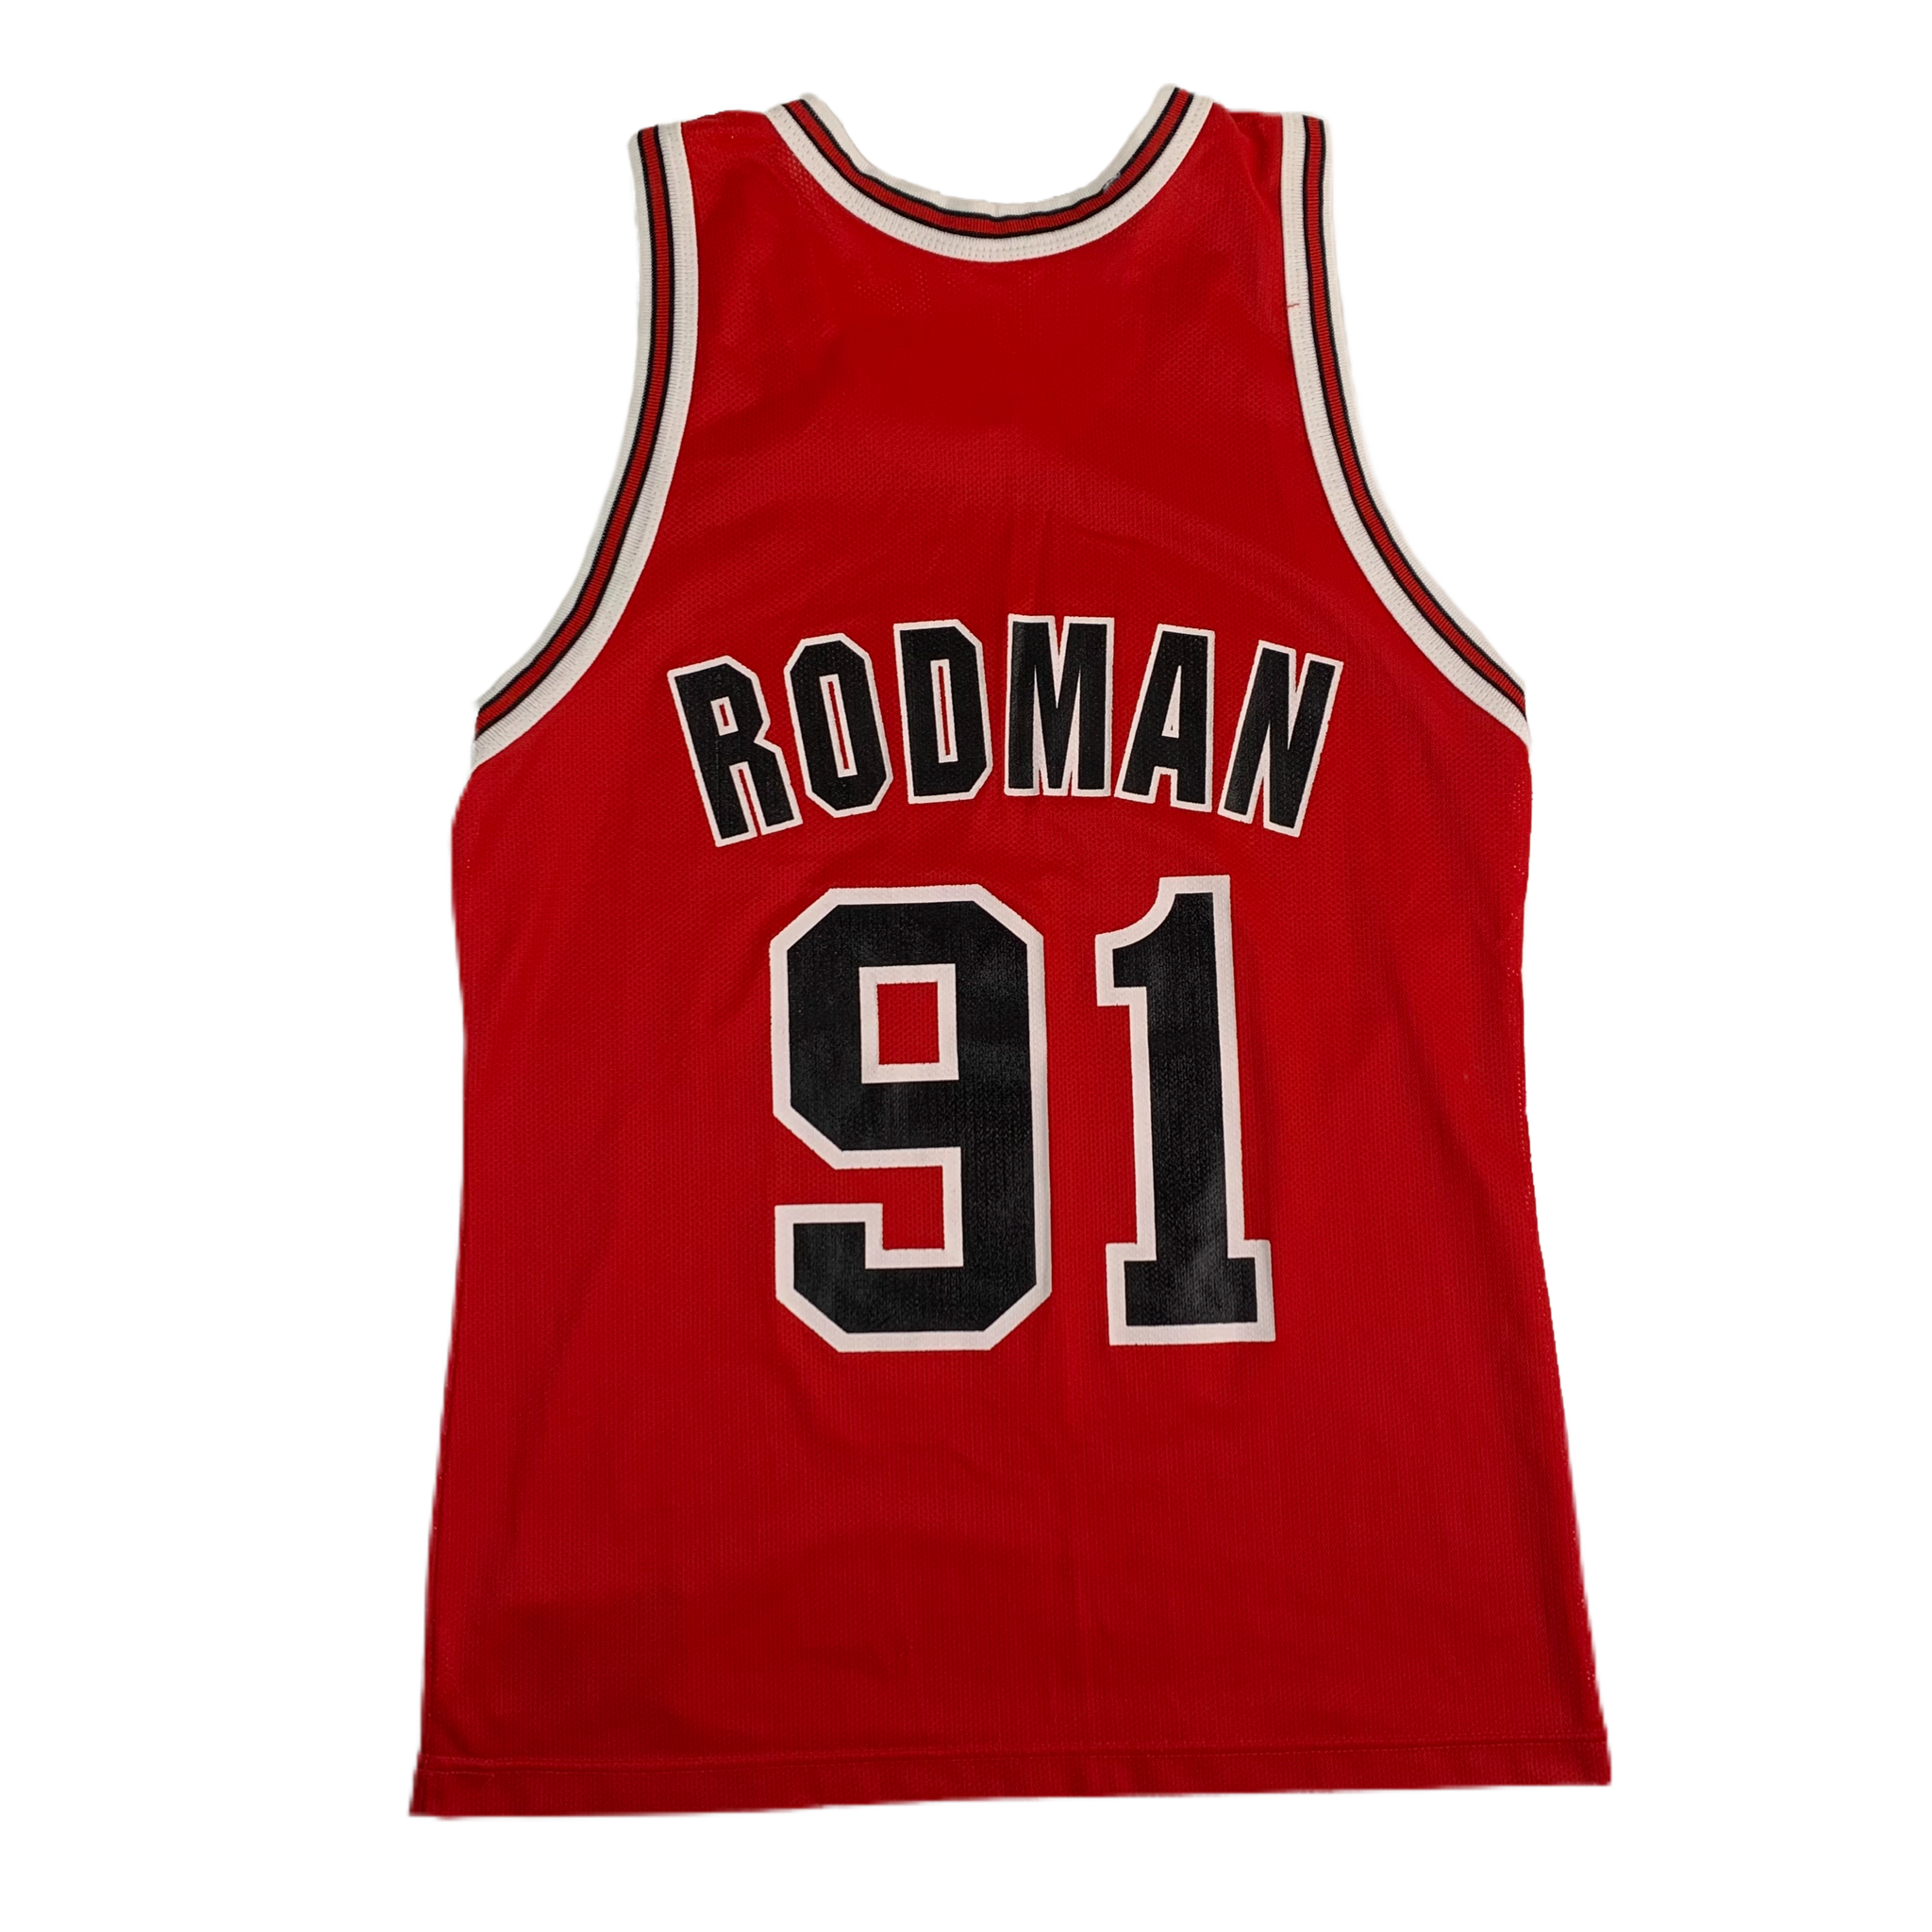 Vintage Chicago Bulls Dennis Rodman Champion Jersey